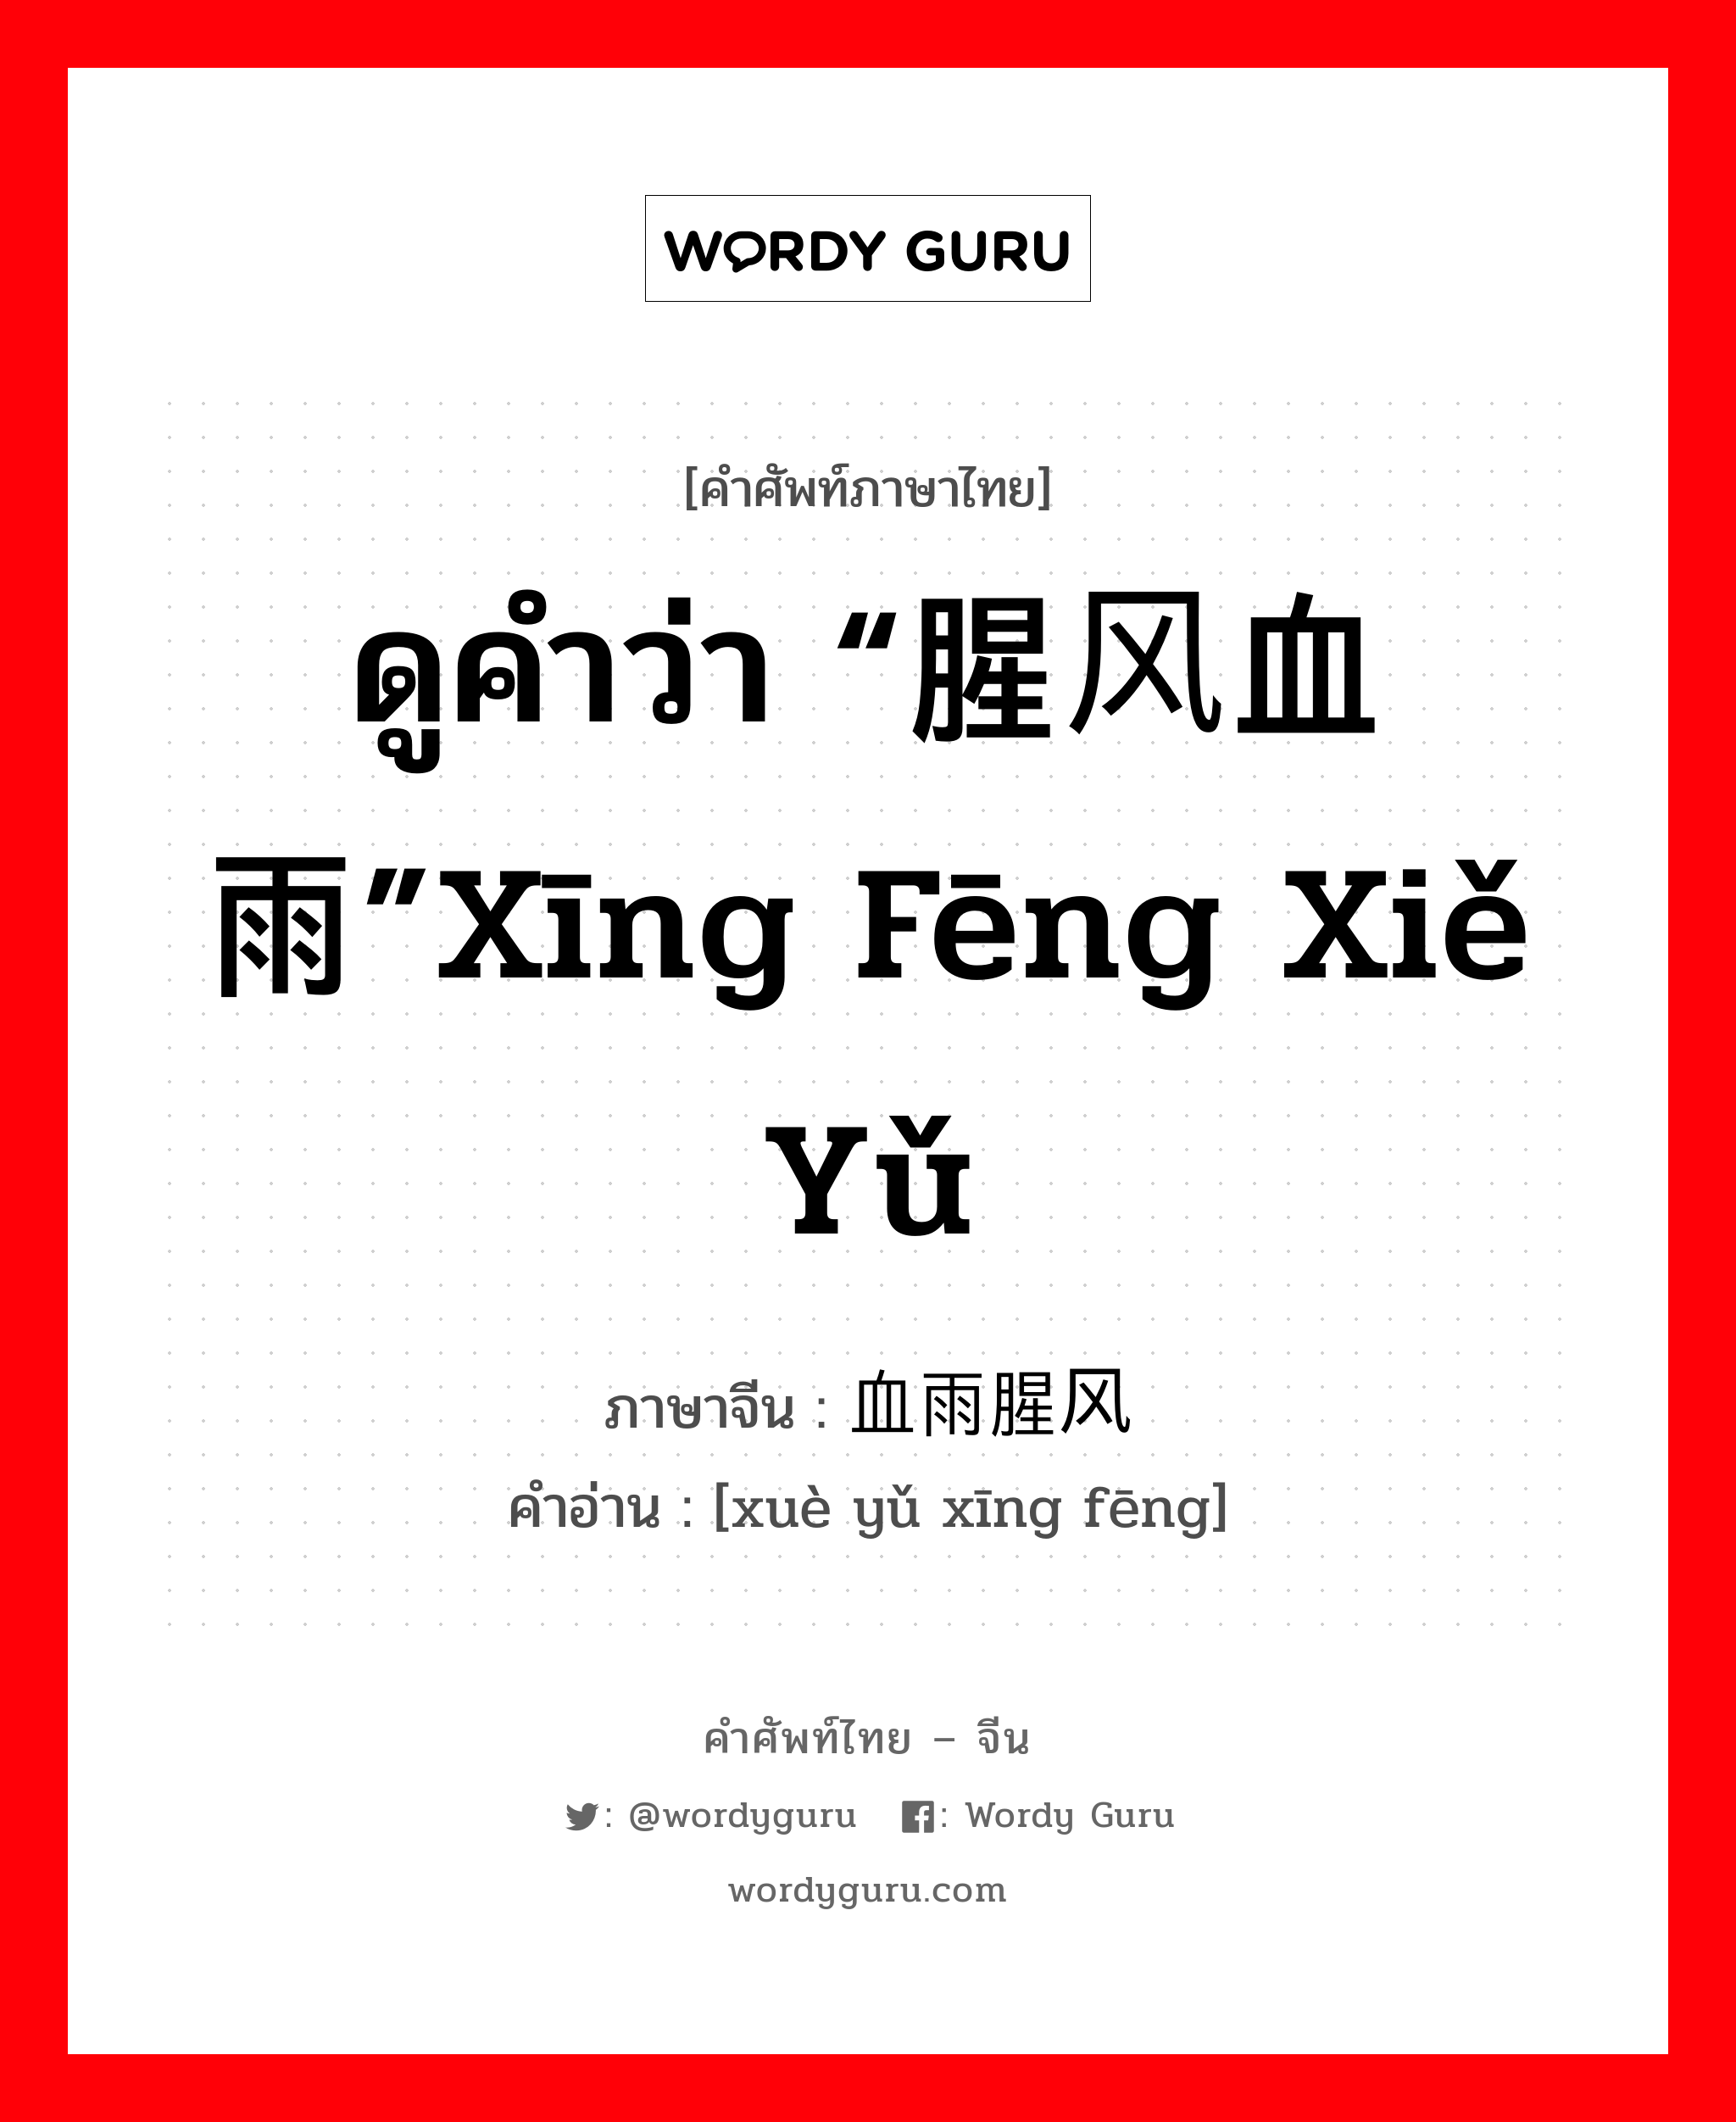 ดูคำว่า “腥风血雨”xīng fēng xiě yǔ ภาษาจีนคืออะไร, คำศัพท์ภาษาไทย - จีน ดูคำว่า “腥风血雨”xīng fēng xiě yǔ ภาษาจีน 血雨腥风 คำอ่าน [xuè yǔ xīng fēng]